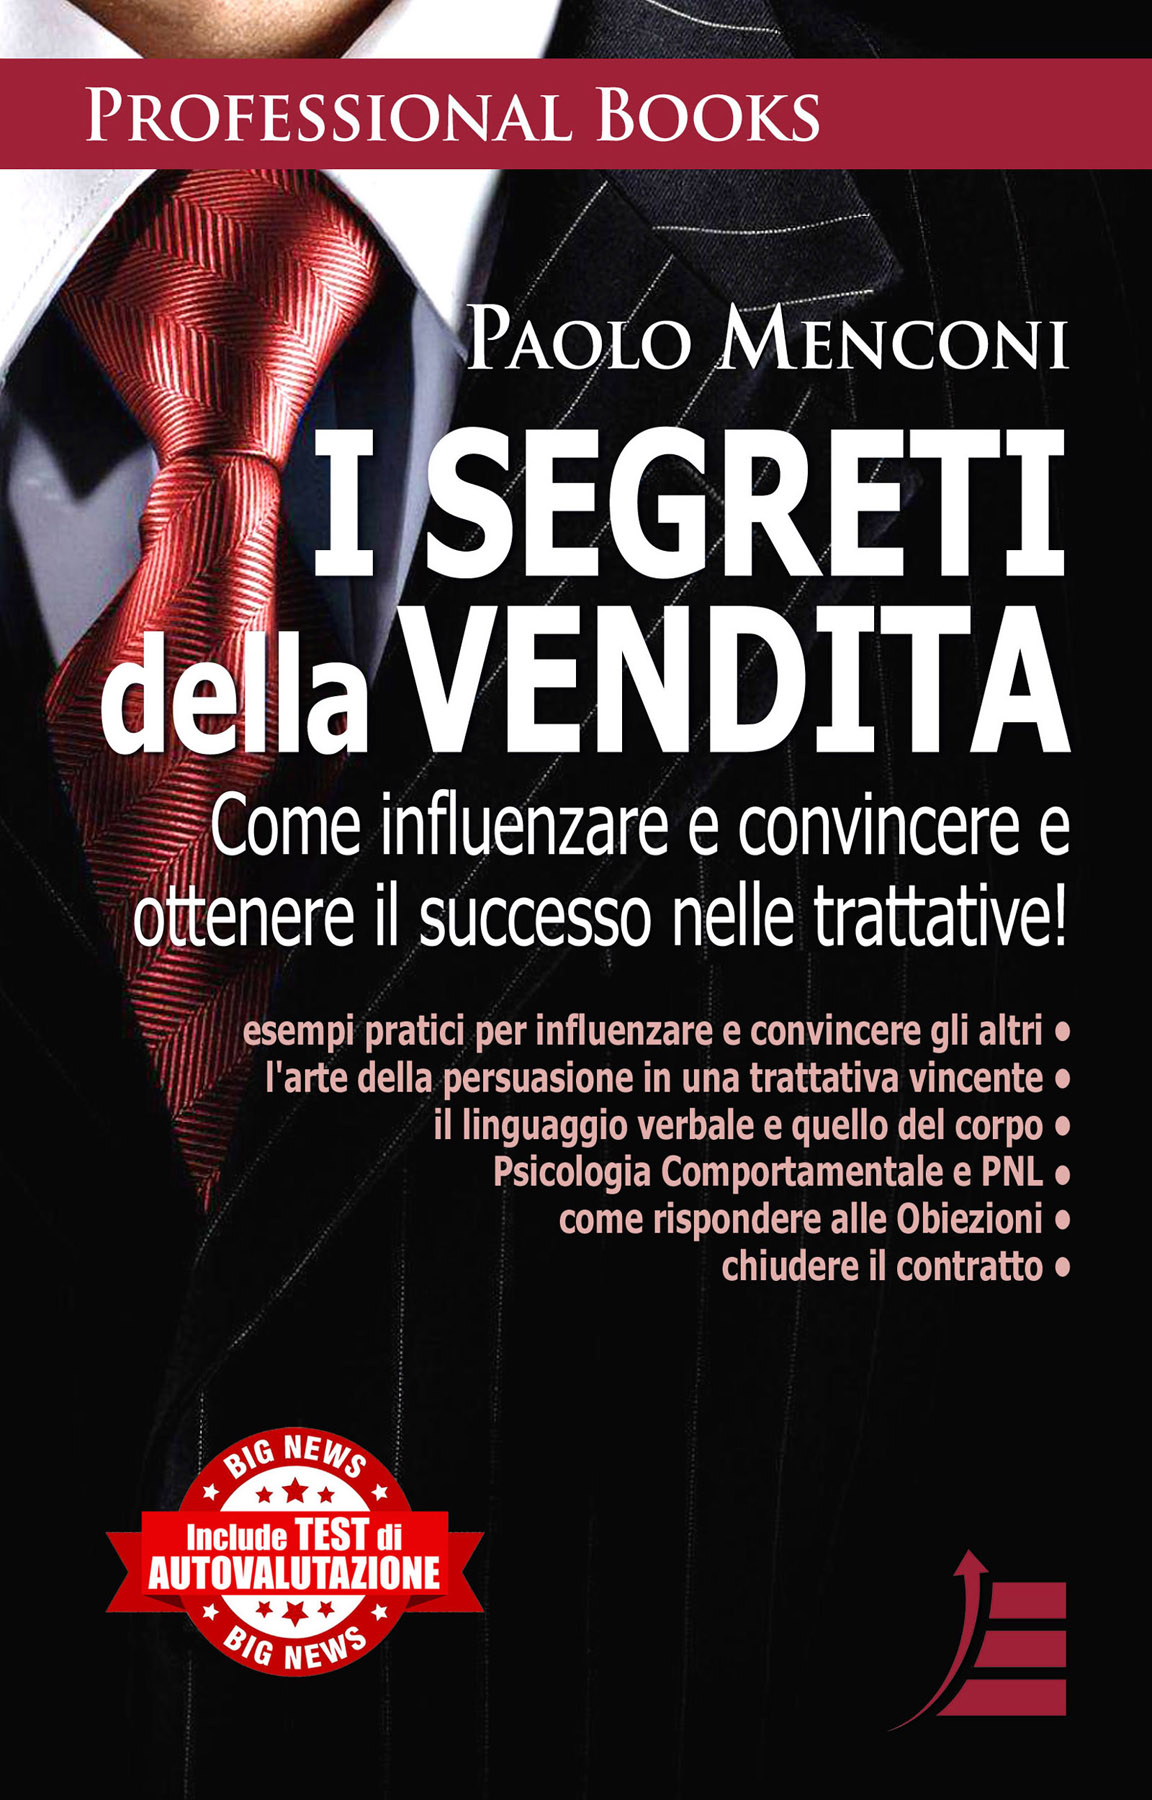 Paolo Menconi – Nel suo nuovo libro ci svela: I Segreti della Vendita.